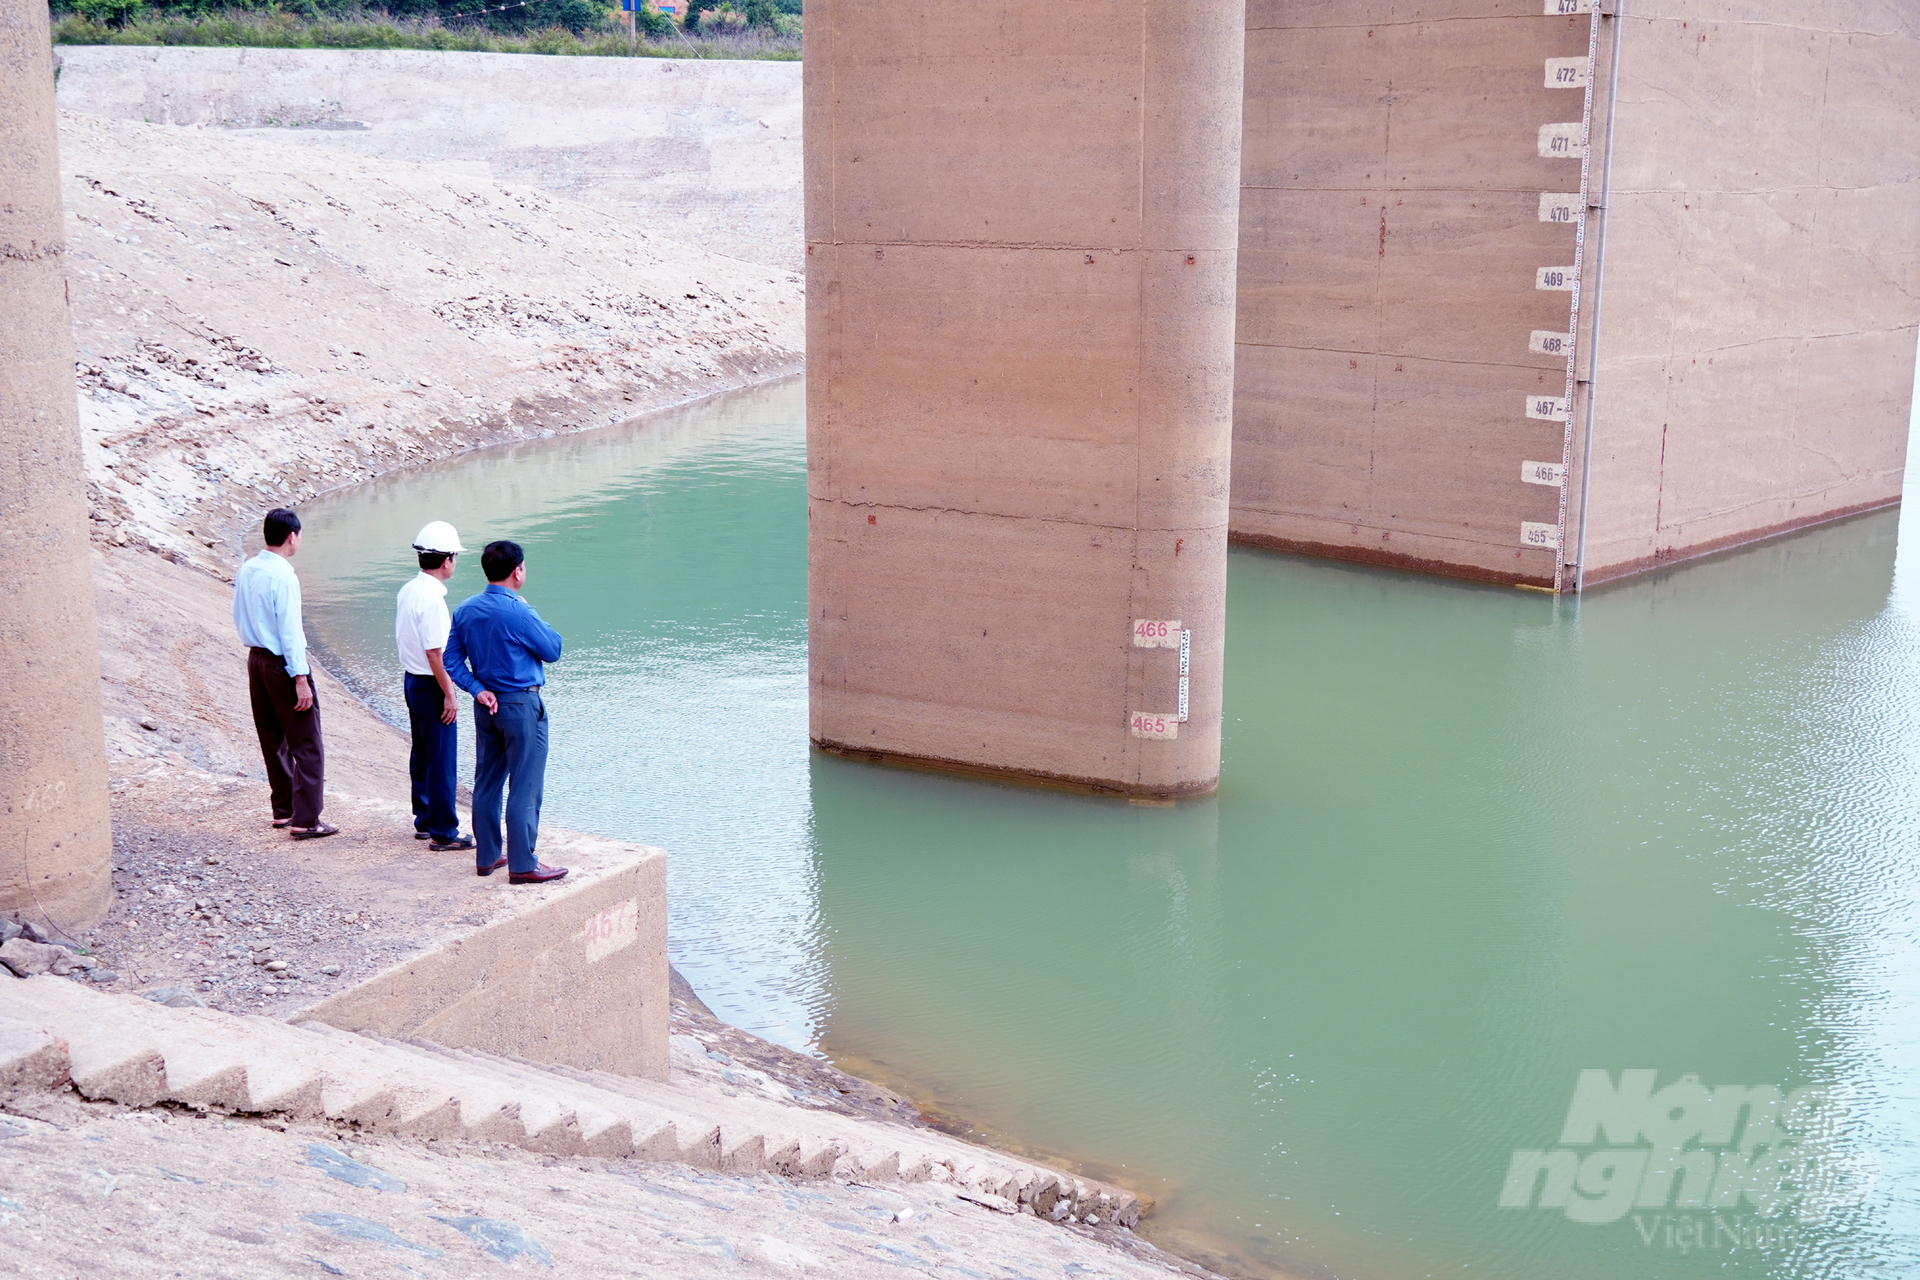 Hồ chứa Thủy điện Quảng Trị xuống thấp kỷ lục khiến ngành nông nghiệp Quảng Trị lo lắng và lên phương án phối hợp điều tiết nước cho vụ hè thu. Ảnh: Võ Dũng.